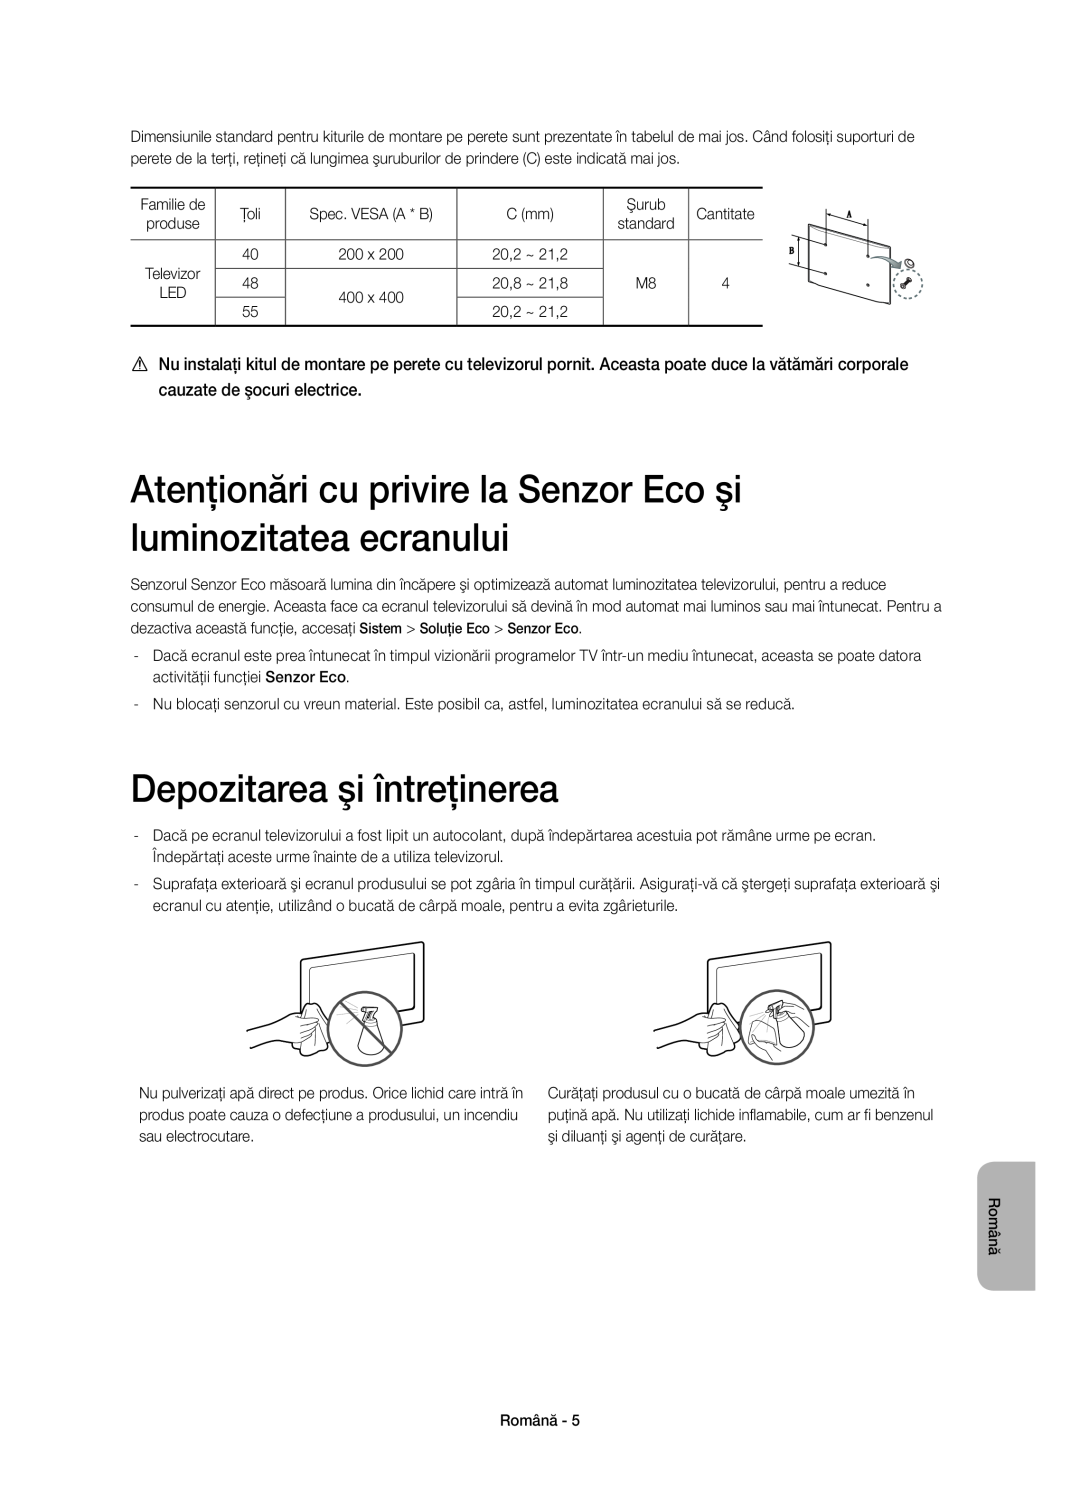 Samsung UE55H6670SLXXH manual Atenţionări cu privire la Senzor Eco şi luminozitatea ecranului, Depozitarea şi întreţinerea 